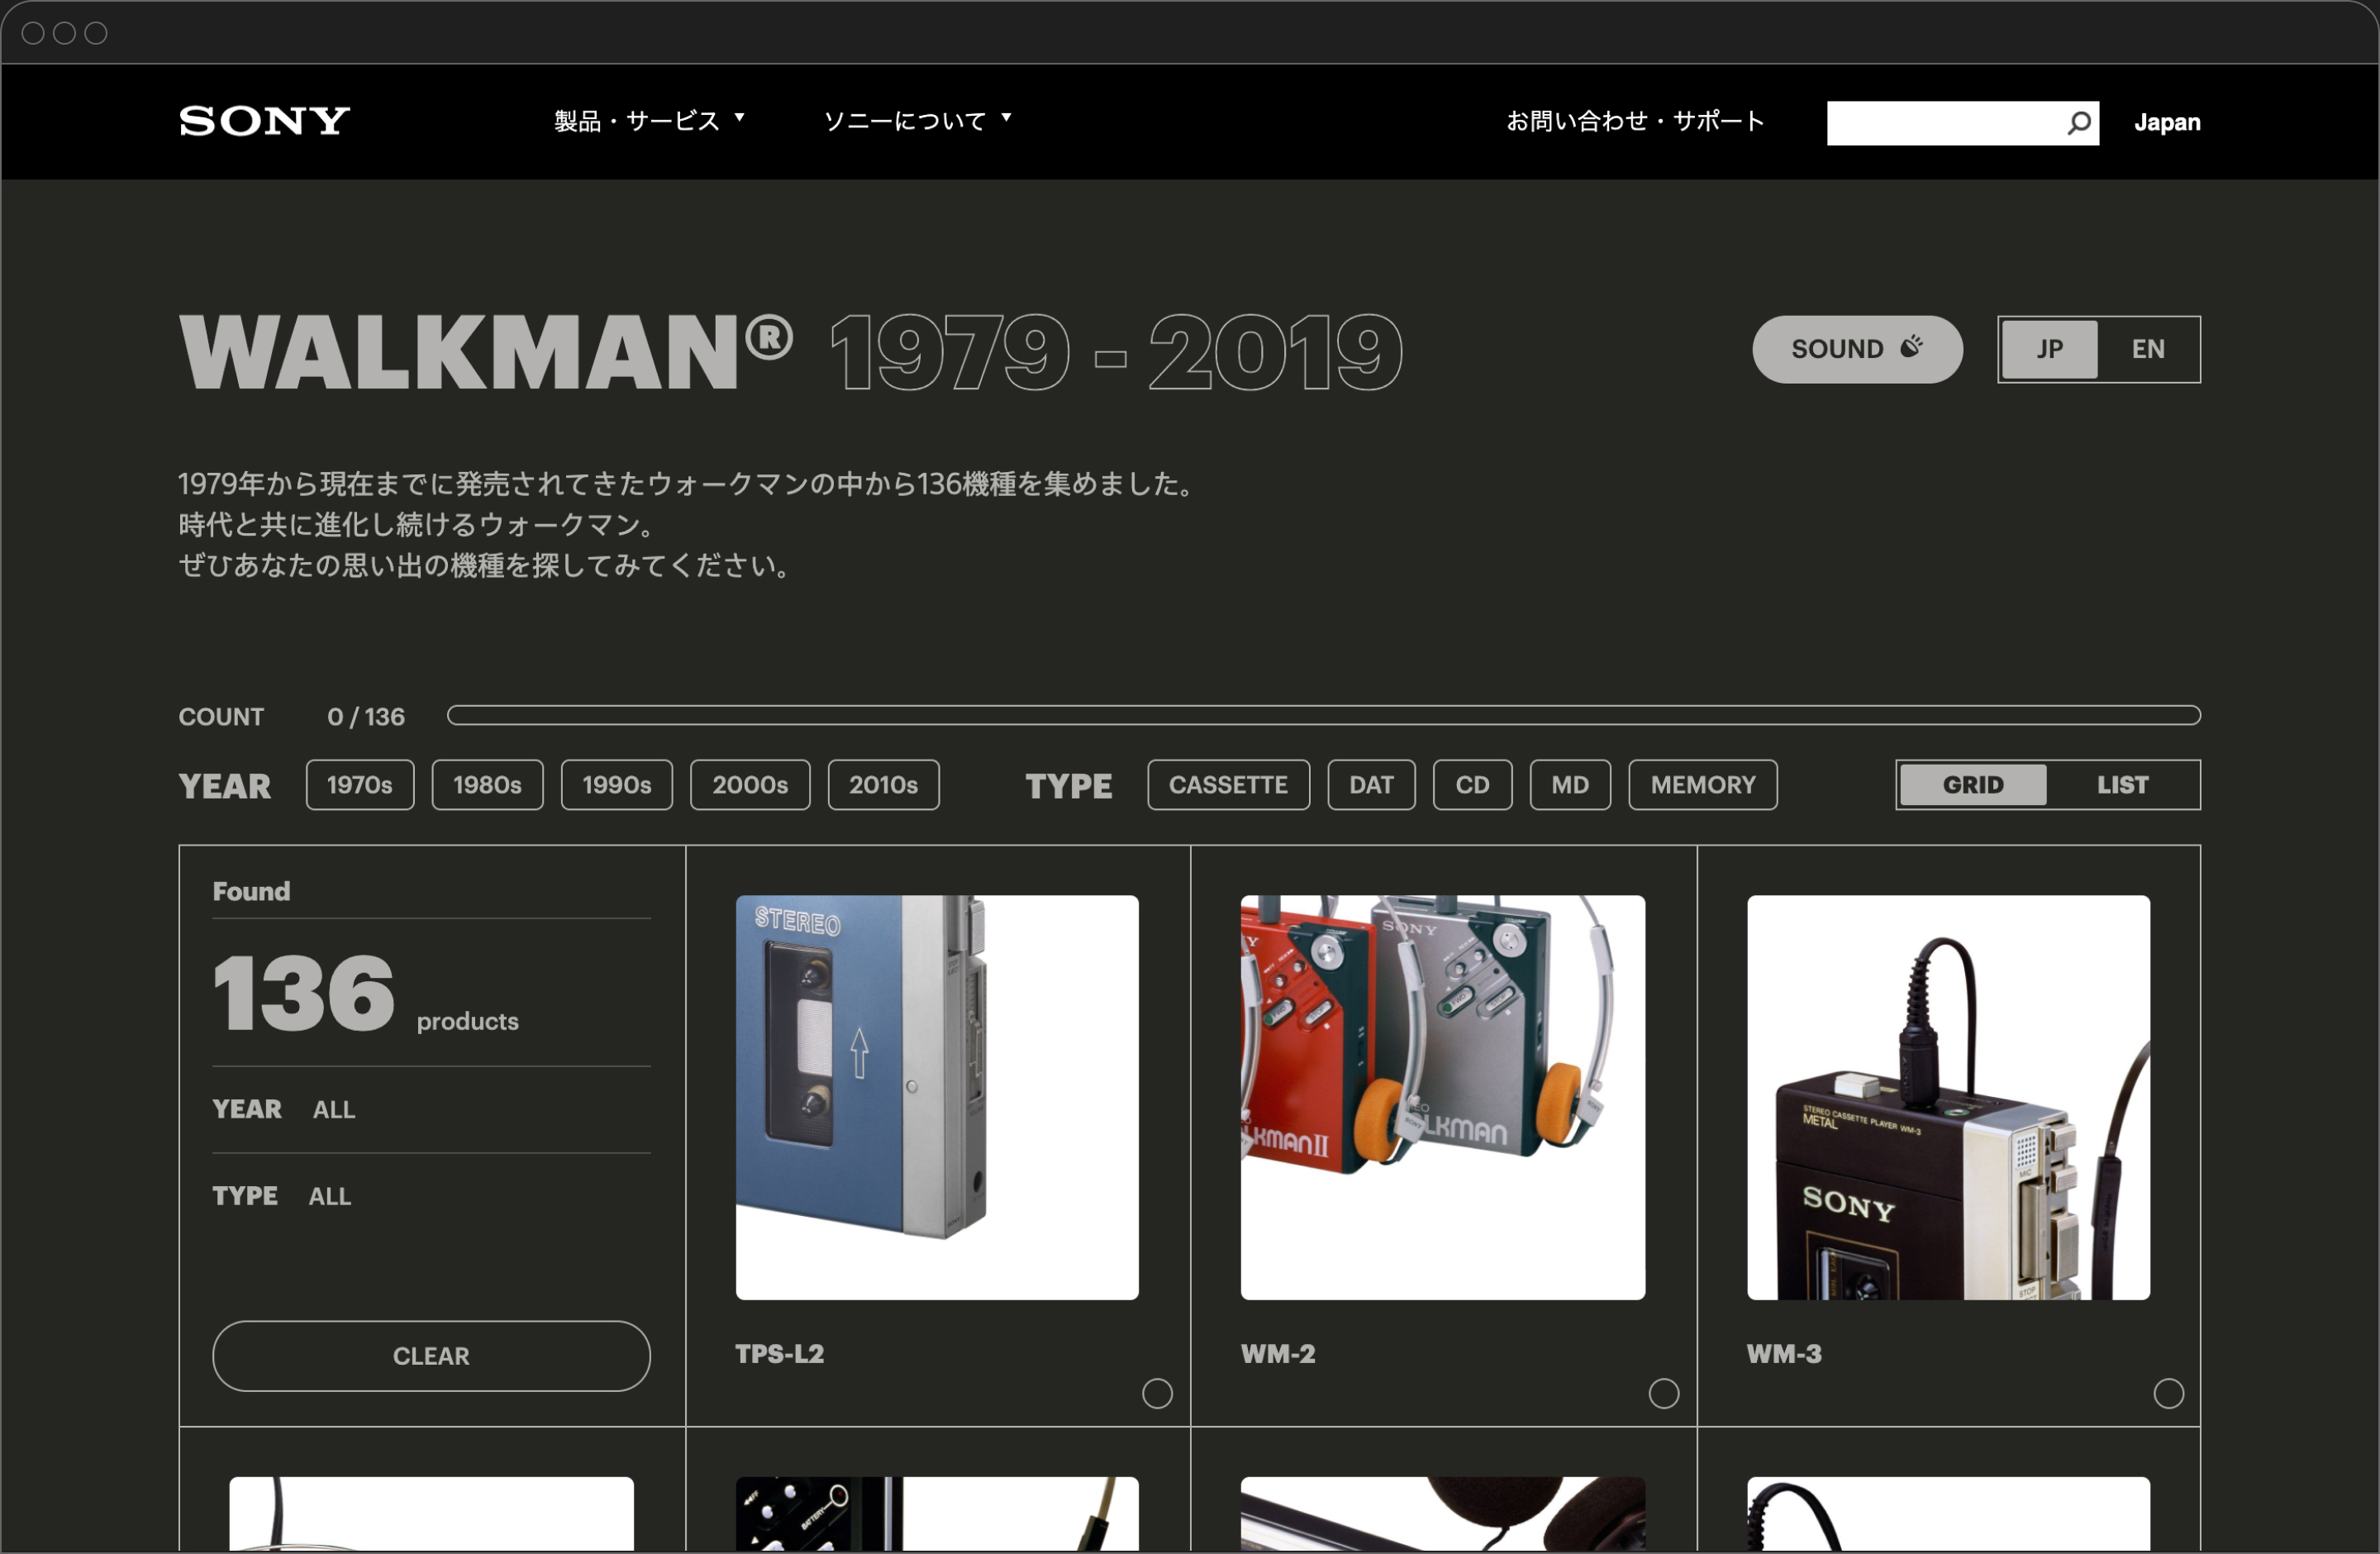 walkman40周年記念サイトのトップページ、サムネイルビュー